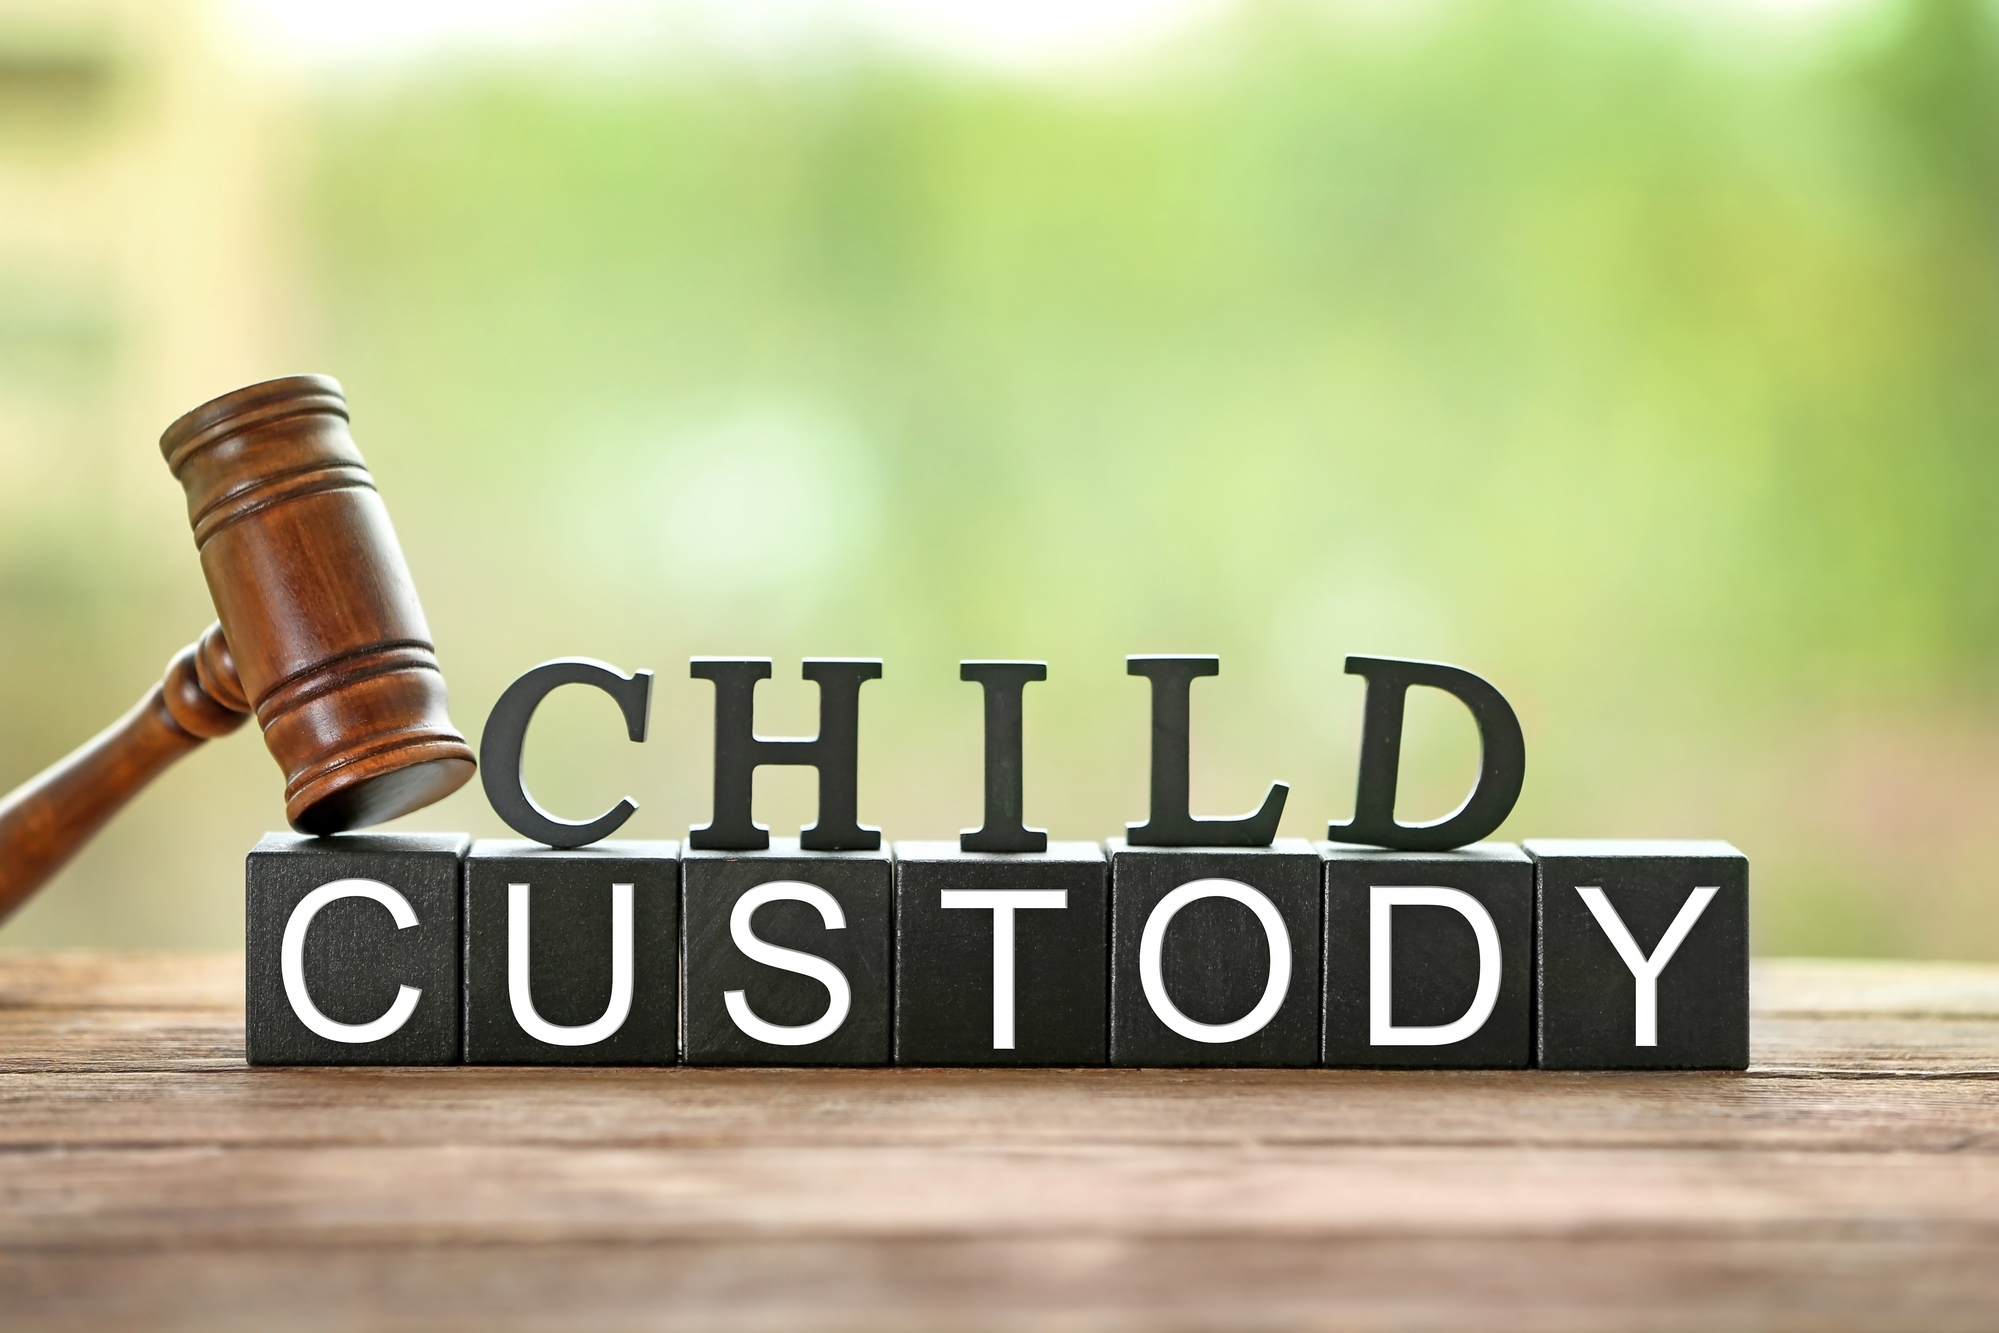 types of alberta child custody agreements